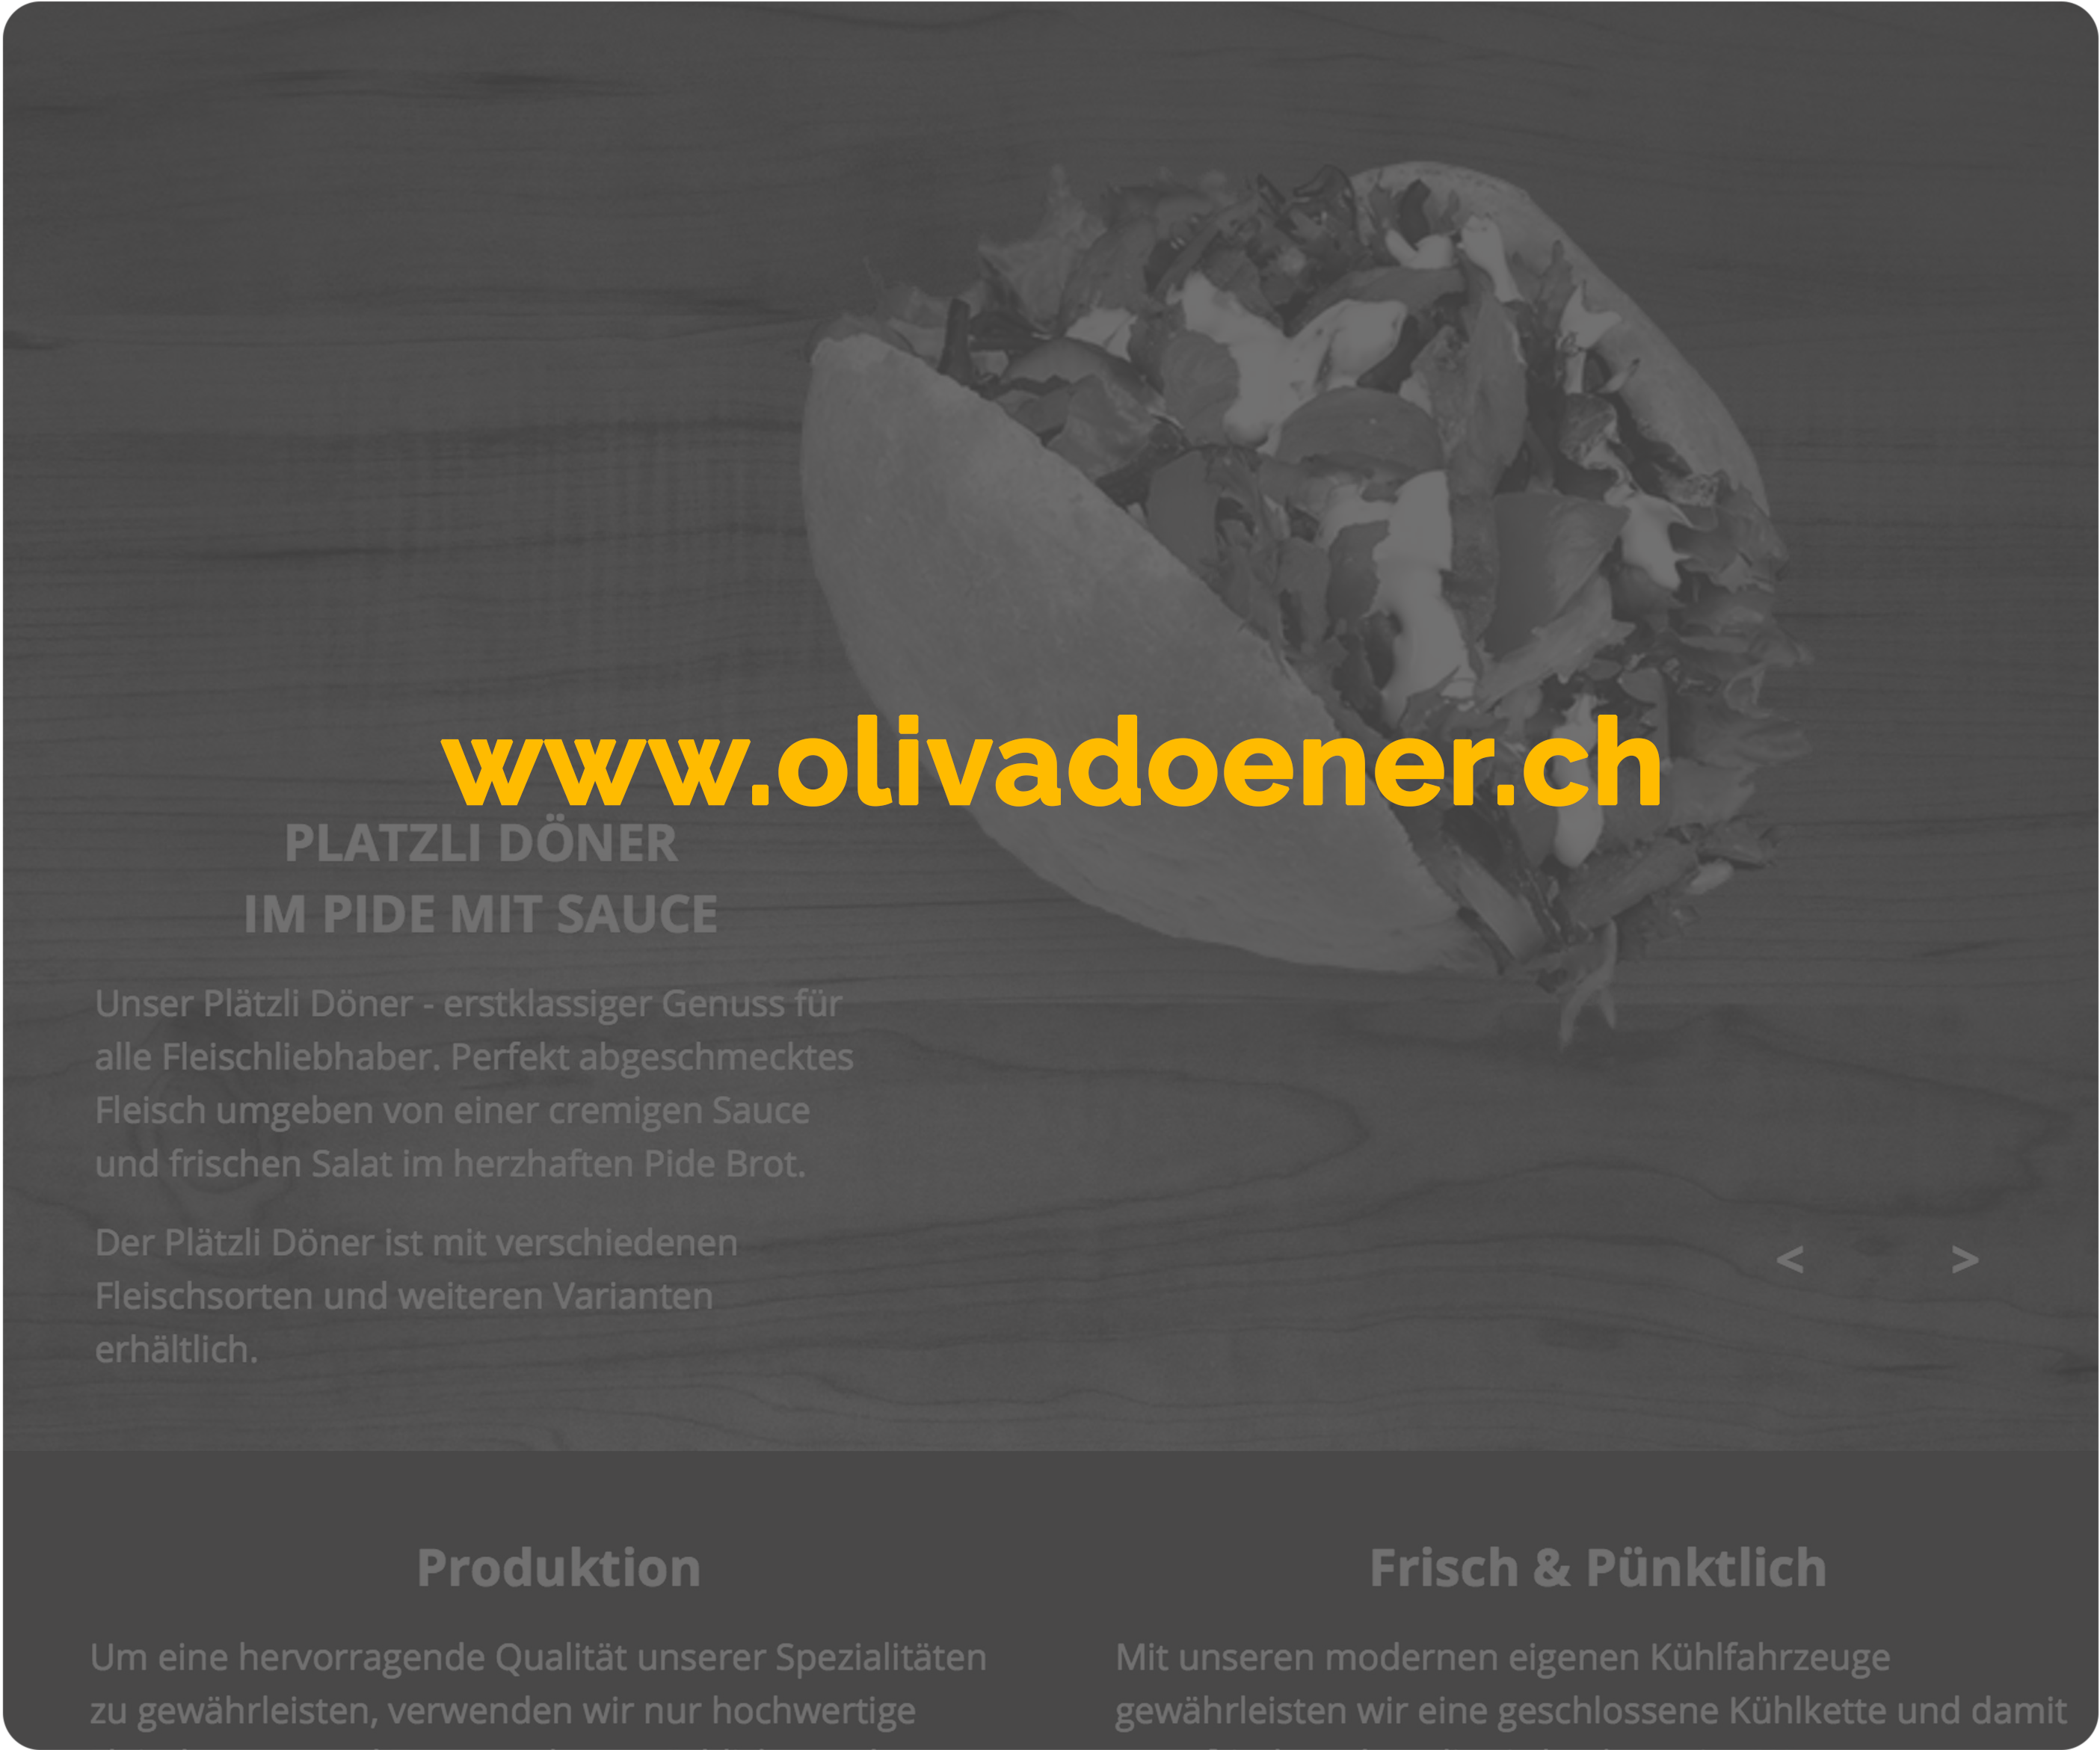 Beispielbild: www.olivadoener.ch